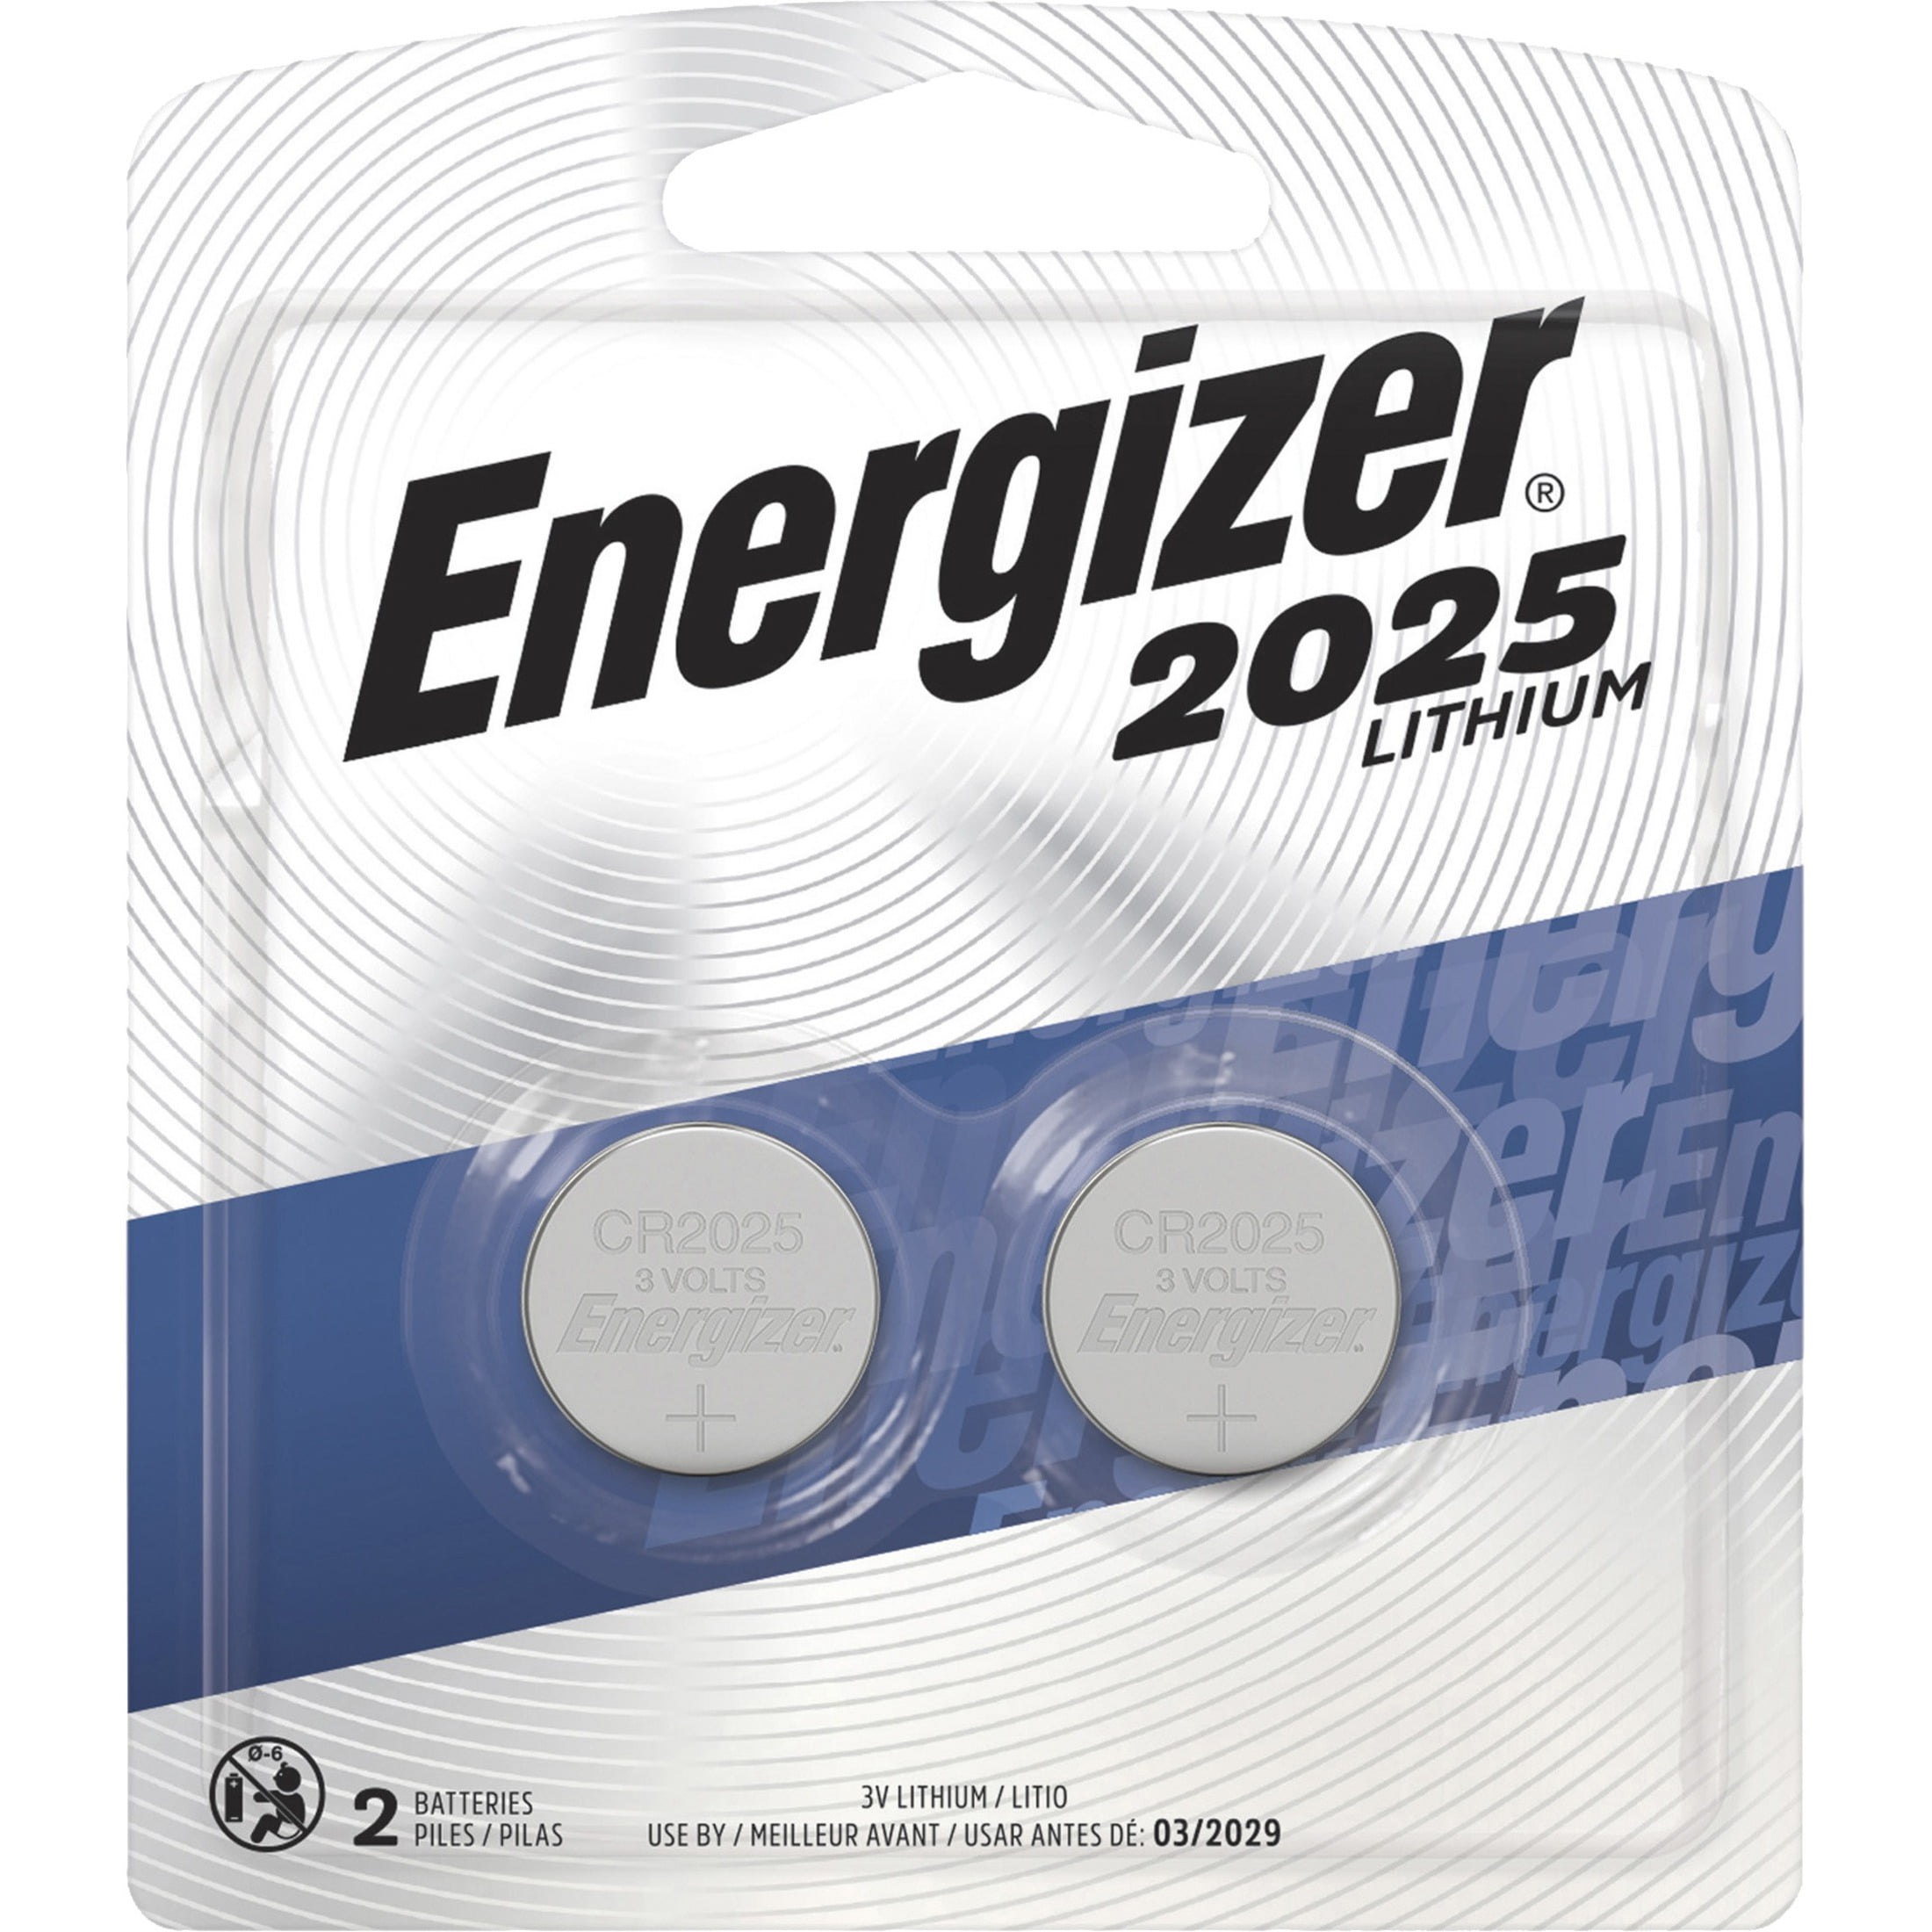 blive forkølet Inhibere undertøj Energizer 2025 Batteries (2 Pack), 3V Lithium Coin Batteries - Walmart.com